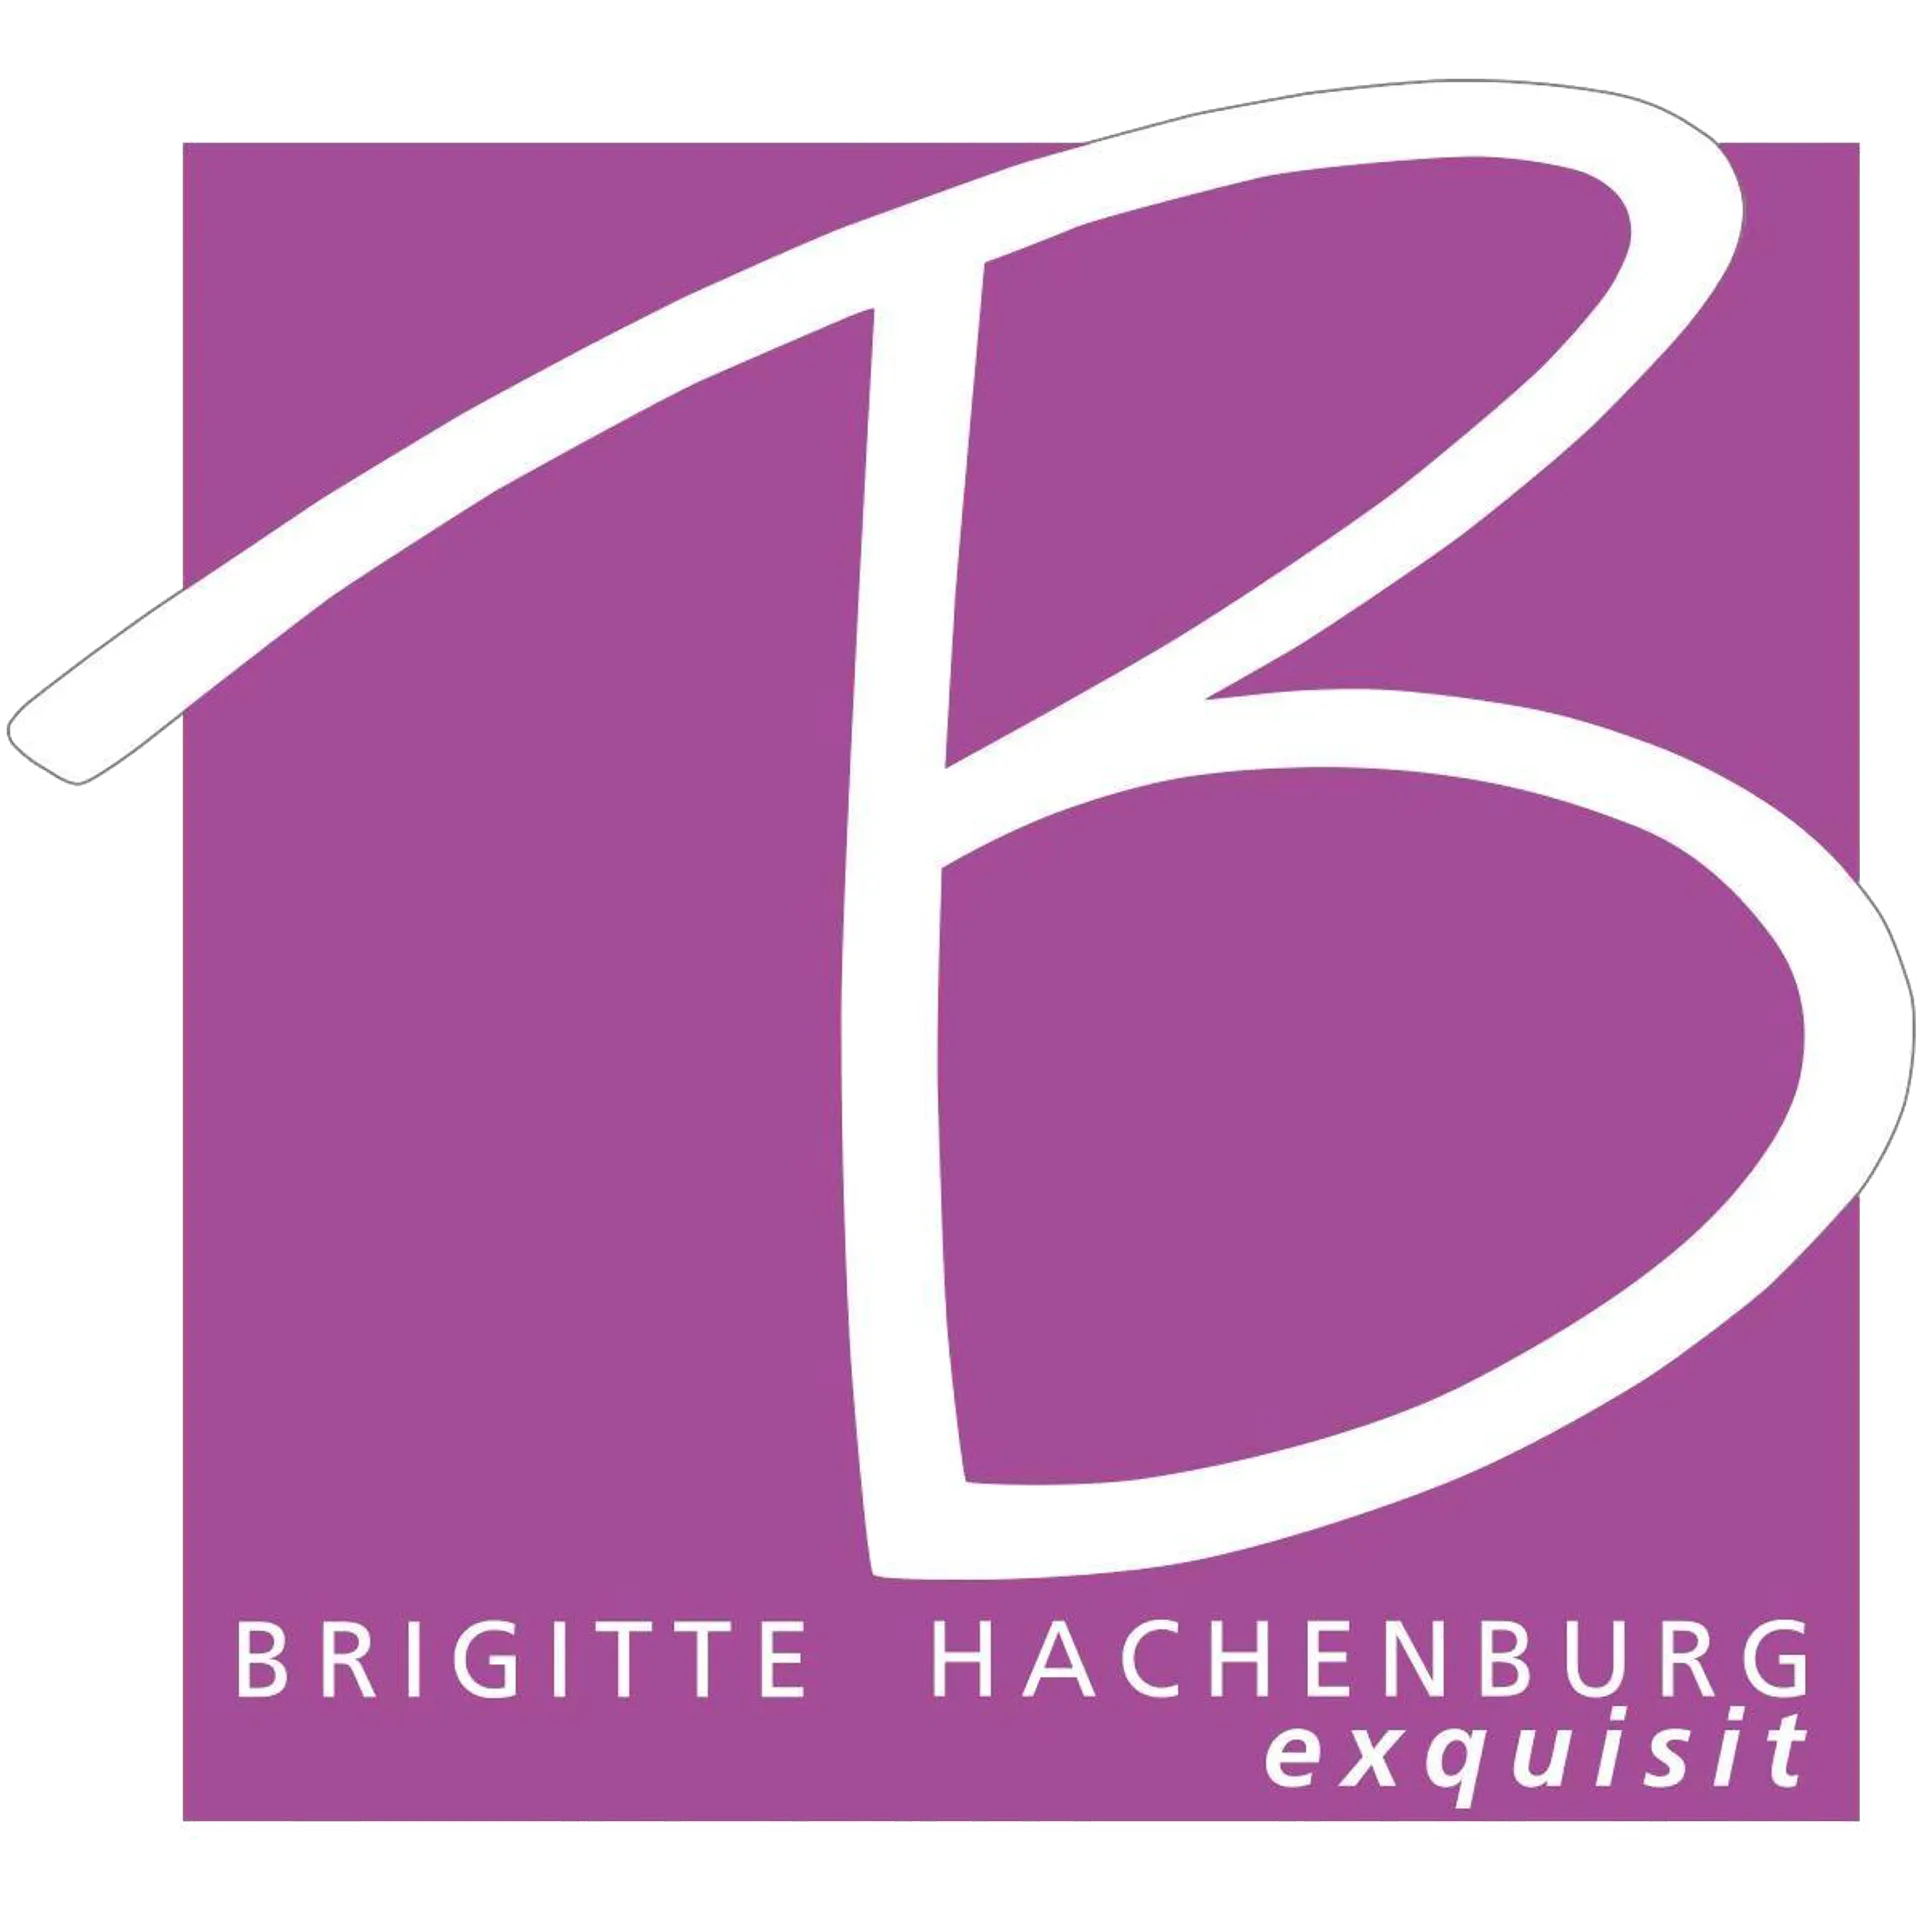 BRIGITTE HACHENBURG logo